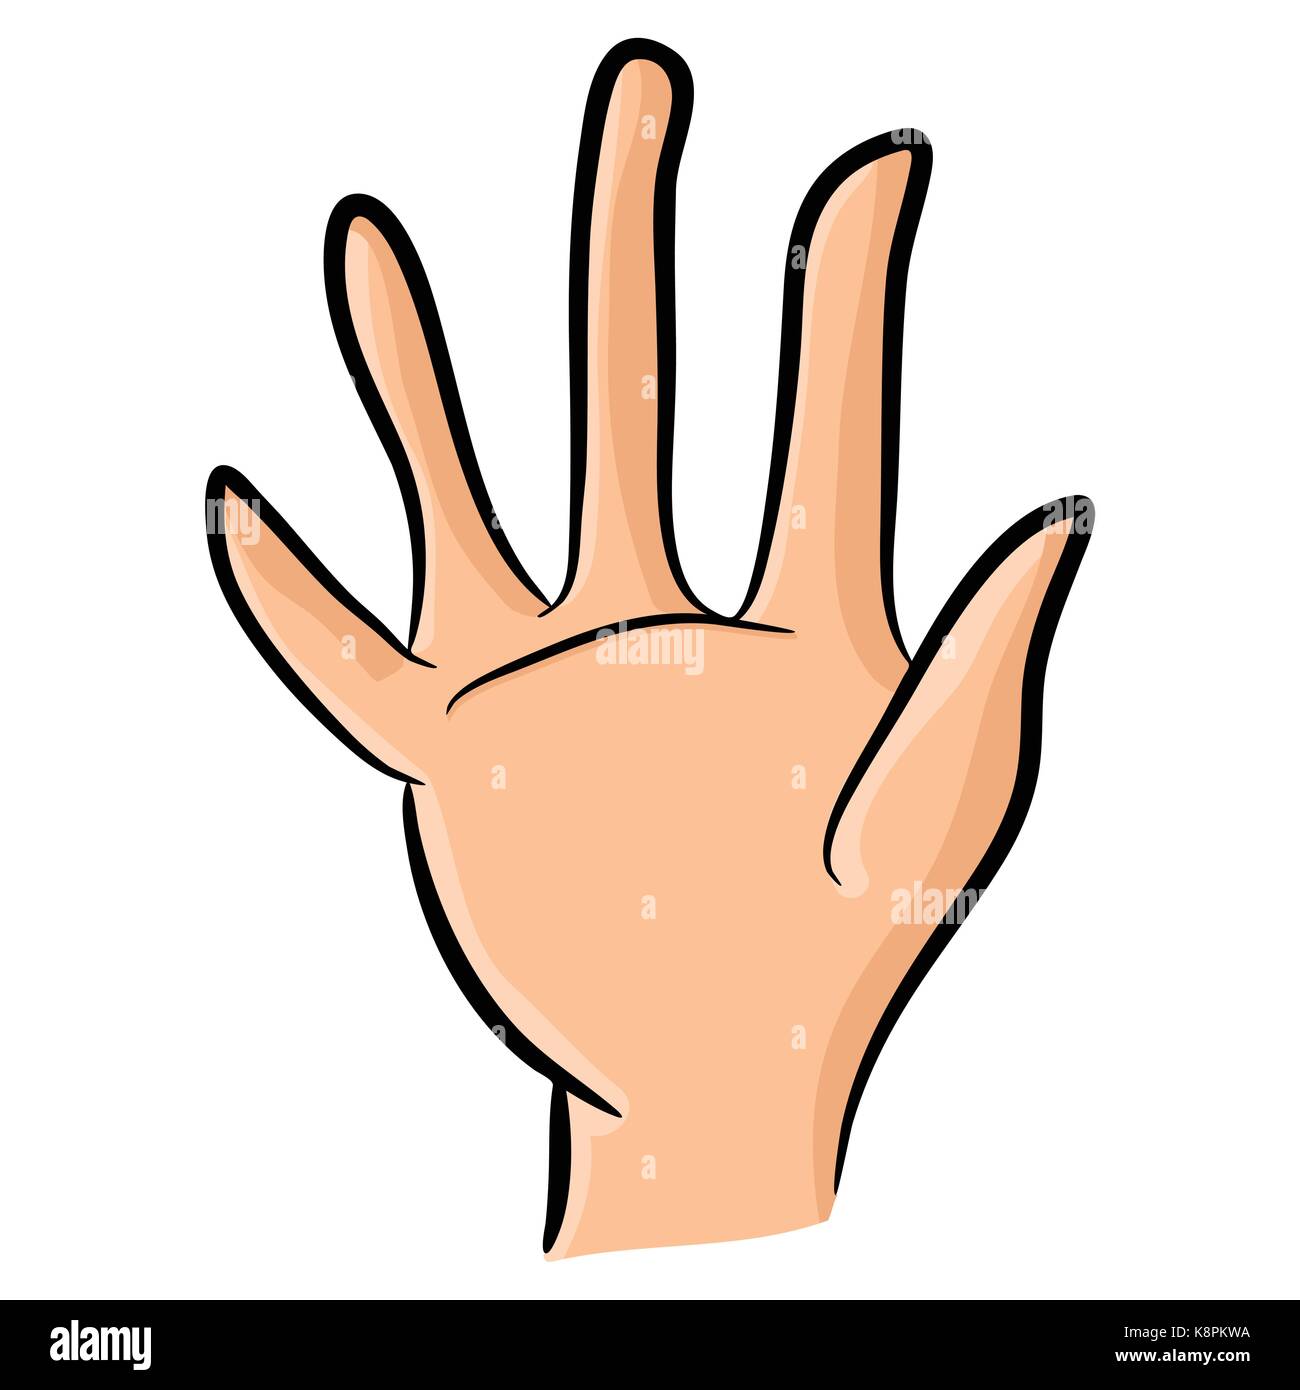 Image de caricature main humaine, le geste paume ouverte, en agitant, . Vector illustration isolé sur fond blanc. Illustration de Vecteur